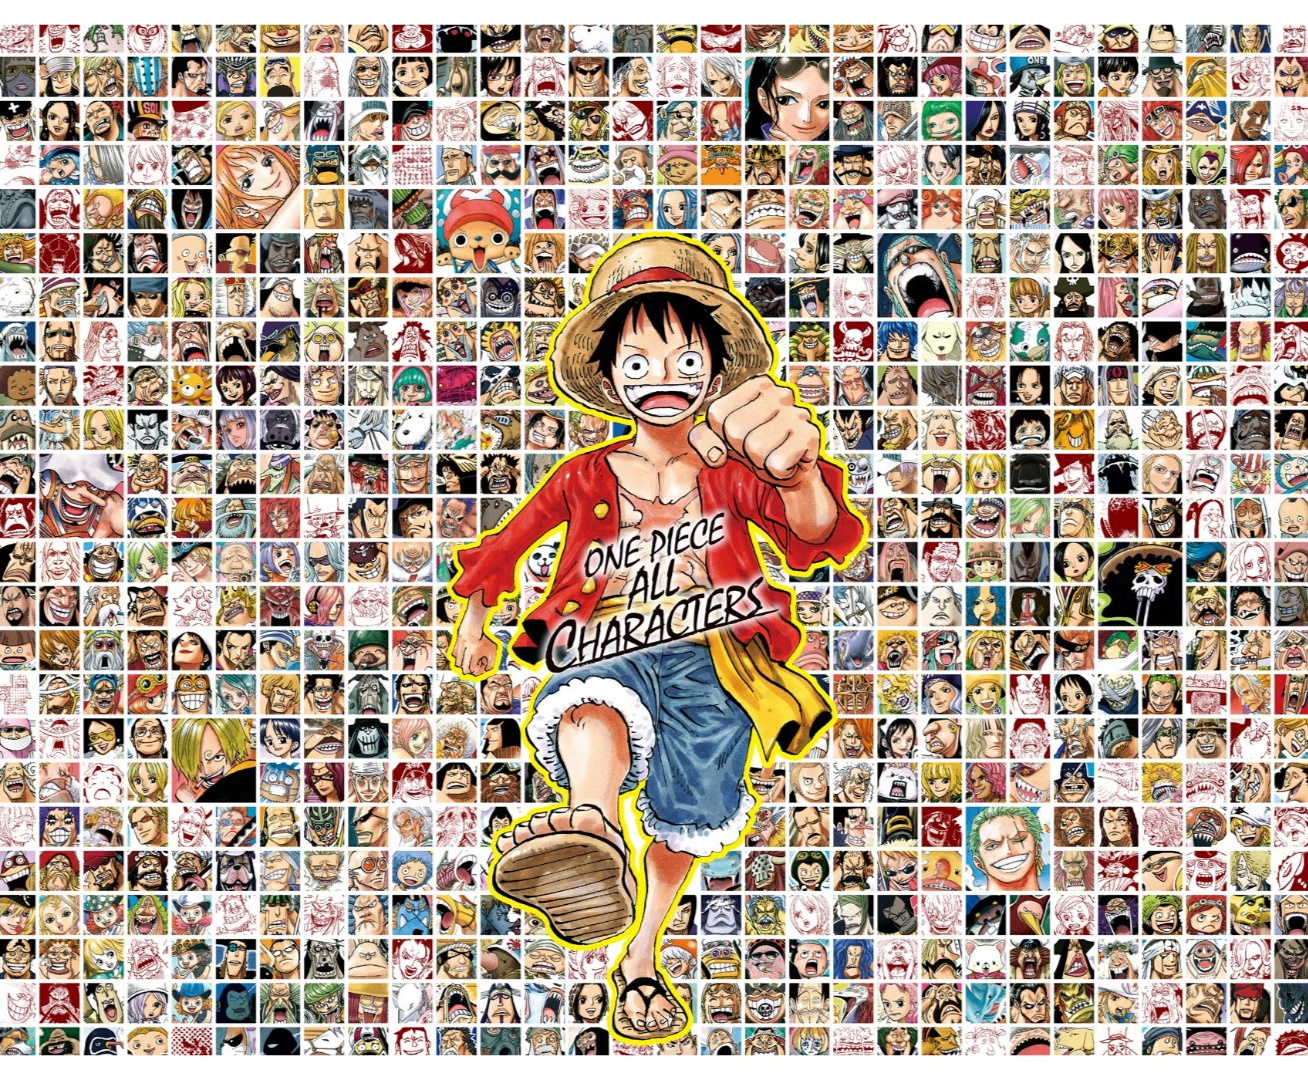 One Piece ワンピース の登場人物 キャラクターのプロフィールまとめ 4 5 Renote リノート